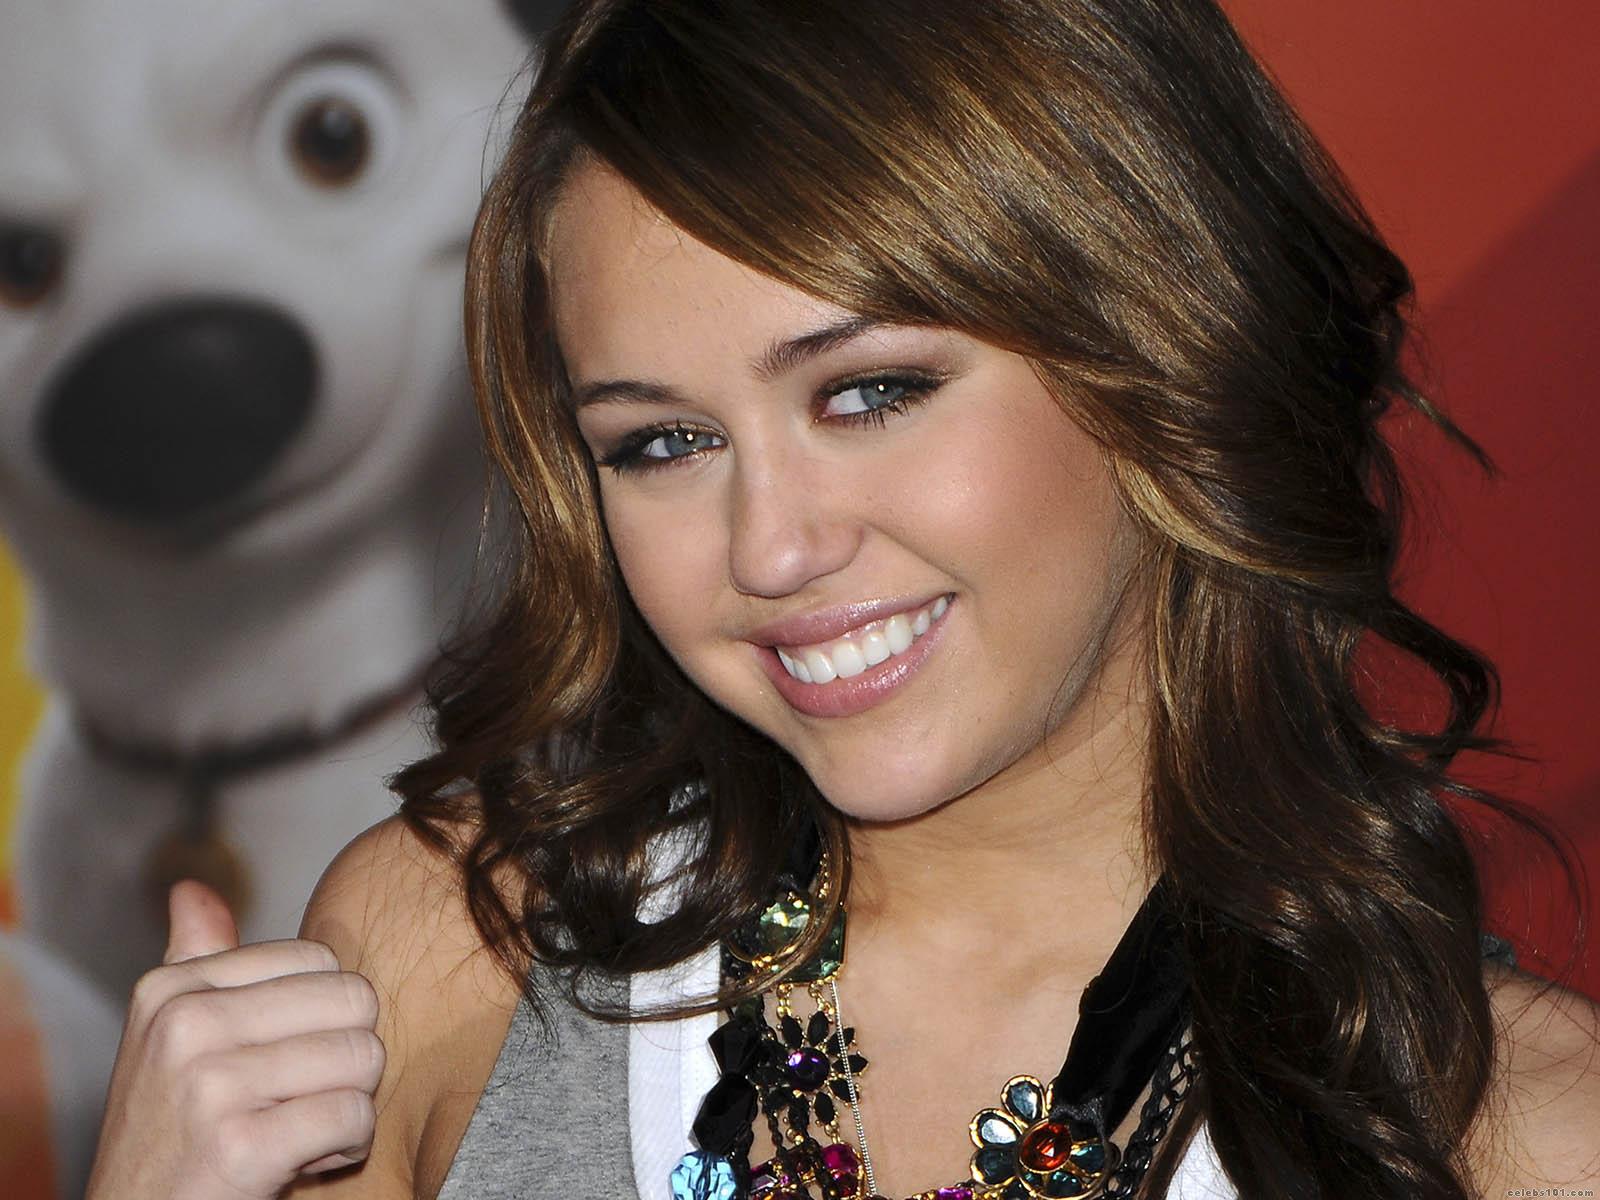 Miley Cyrus (Hannah Montana) Wallpaper